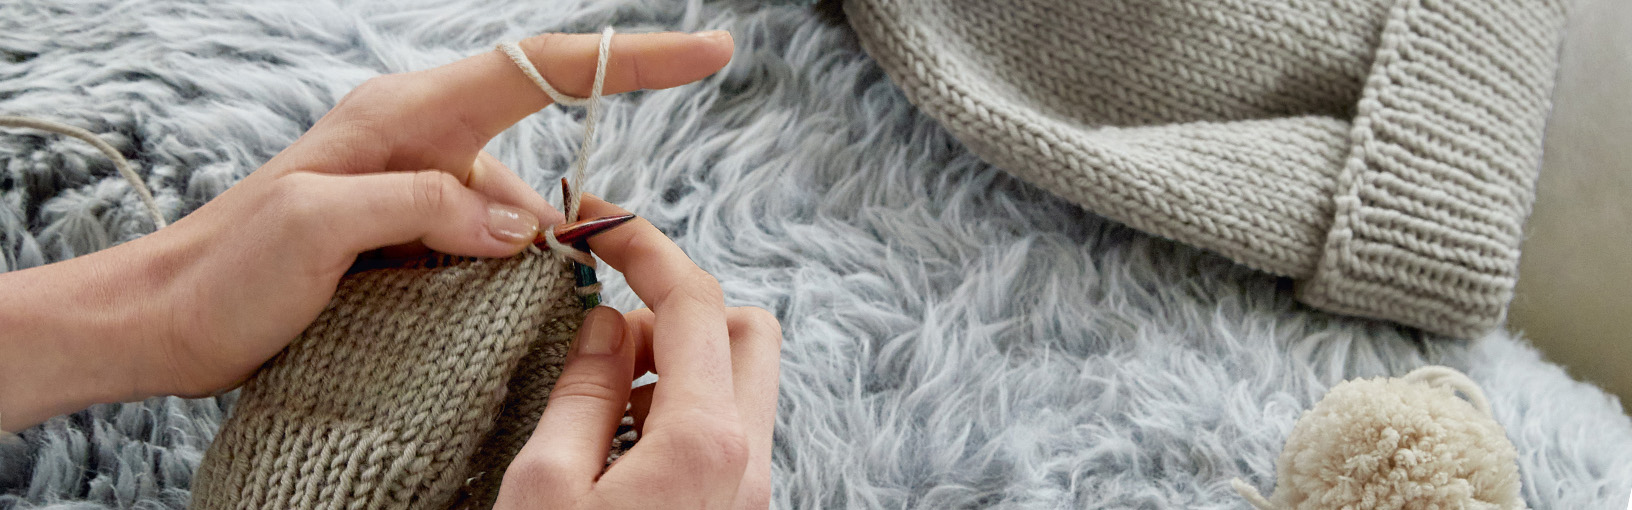 Visokokvalitetne pređe za pletenje, kukičanje i filc Lana Grossa Vune | Lace